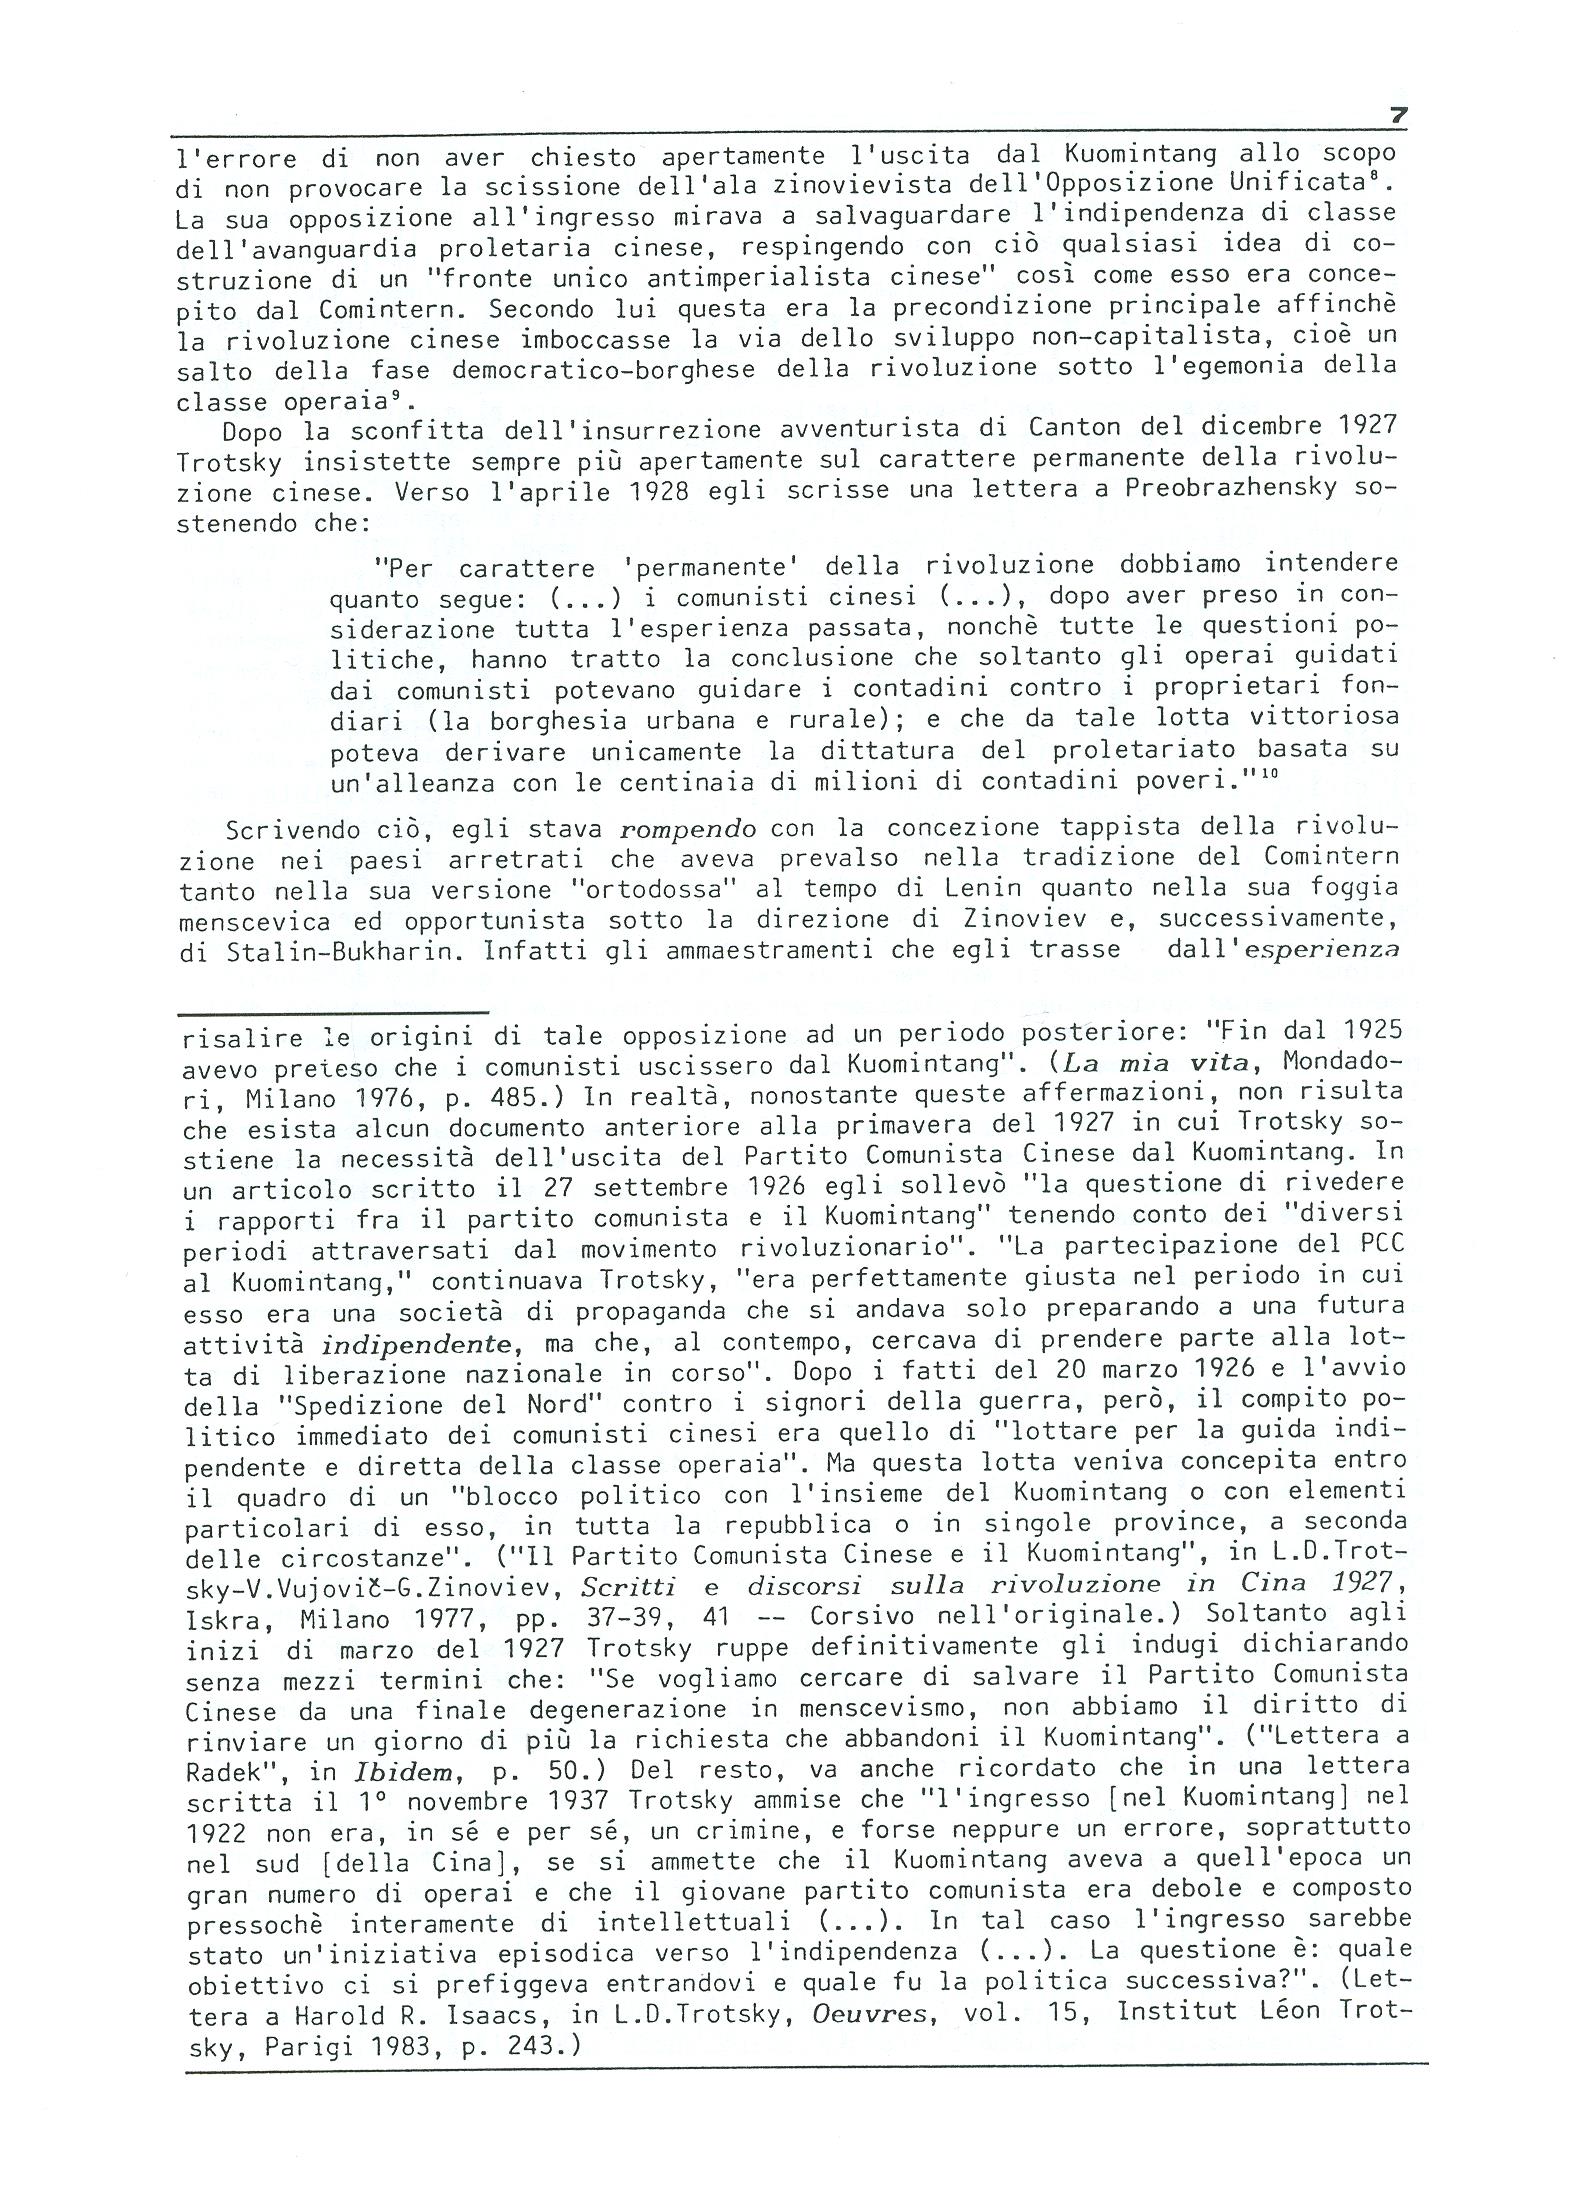 Studi e Ricerche n. 18 (aprile 1990) - pag. 7